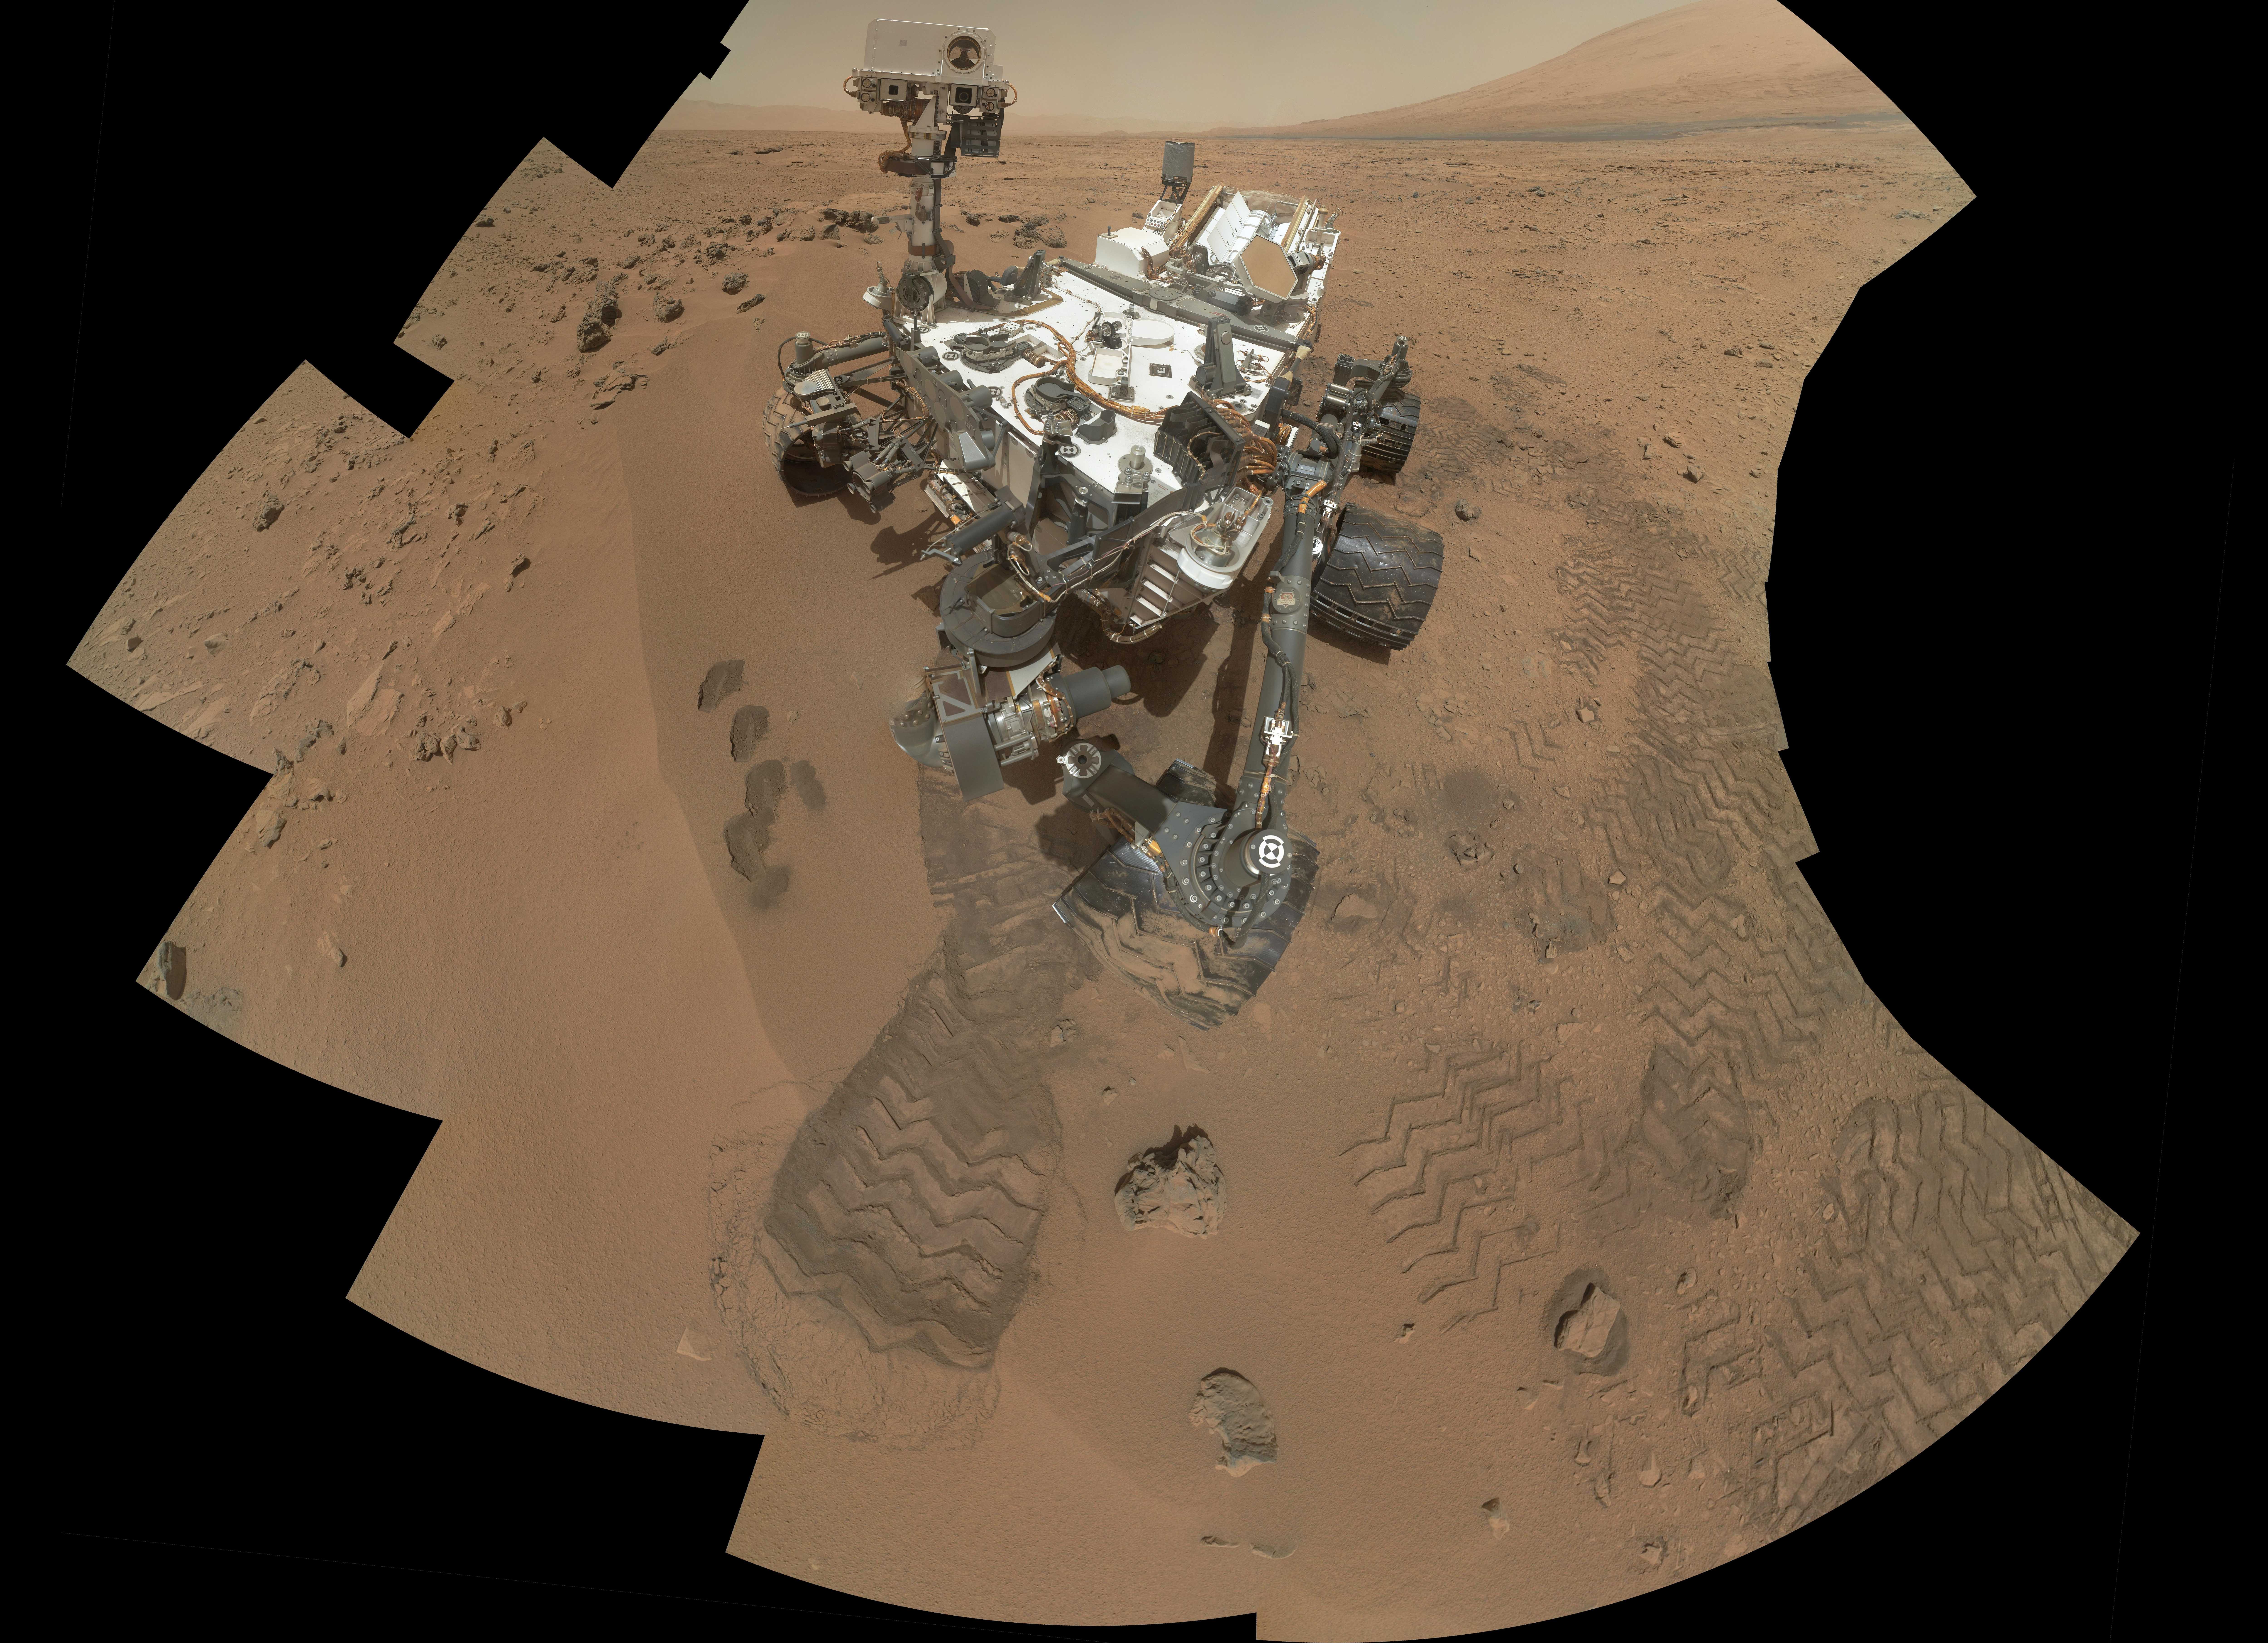 Curiosity Rover at Rocknest on Mars